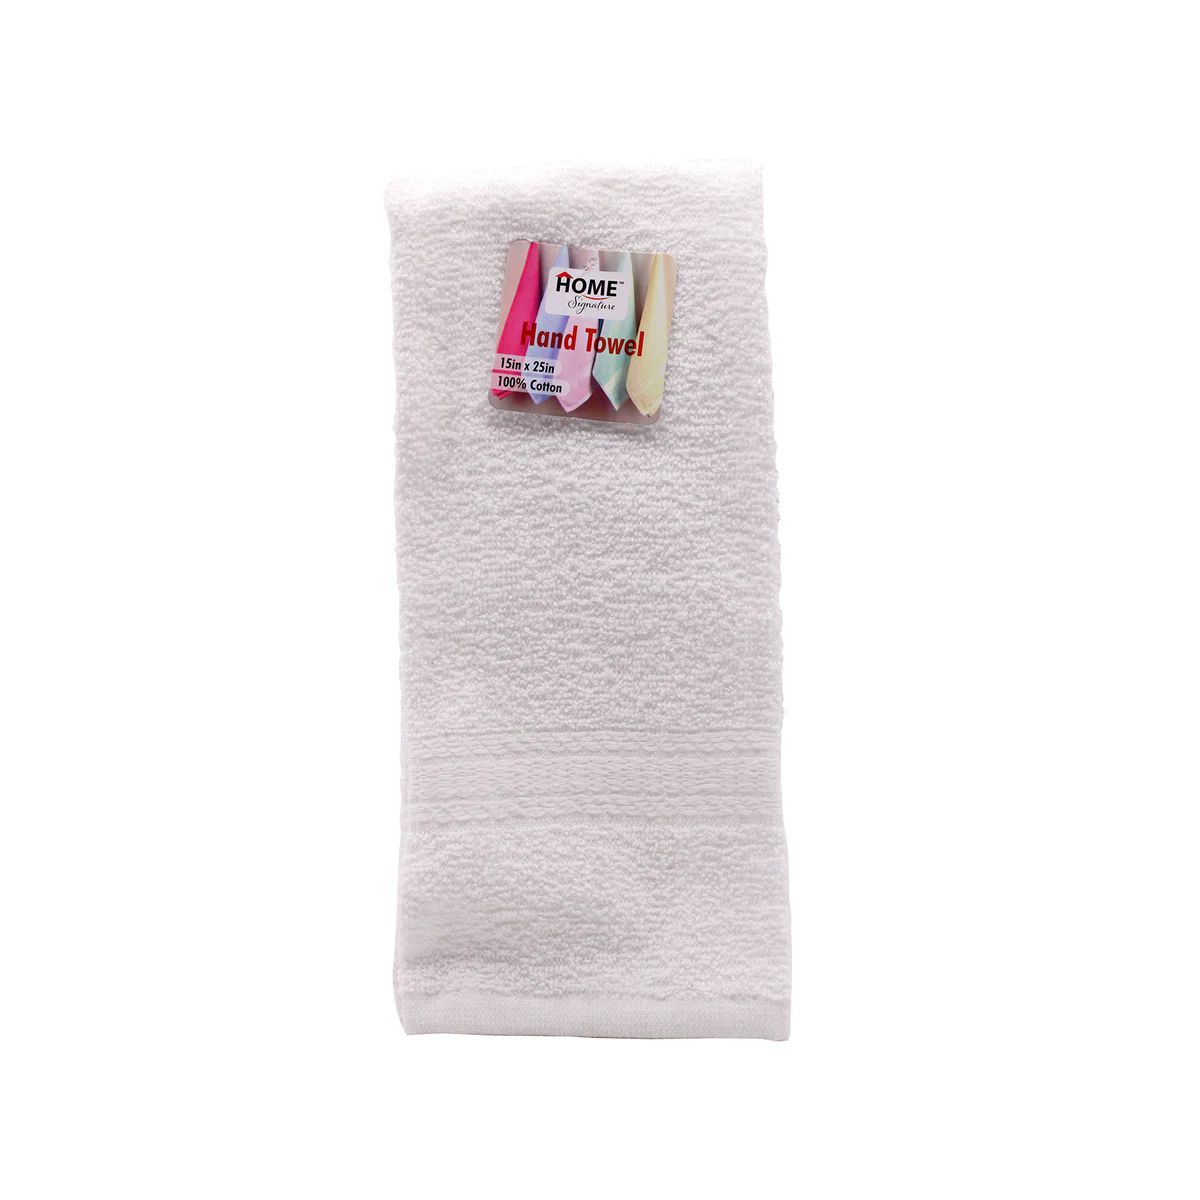 15X25 Wholesale Cotton White Hand Towels - Towel Super Center